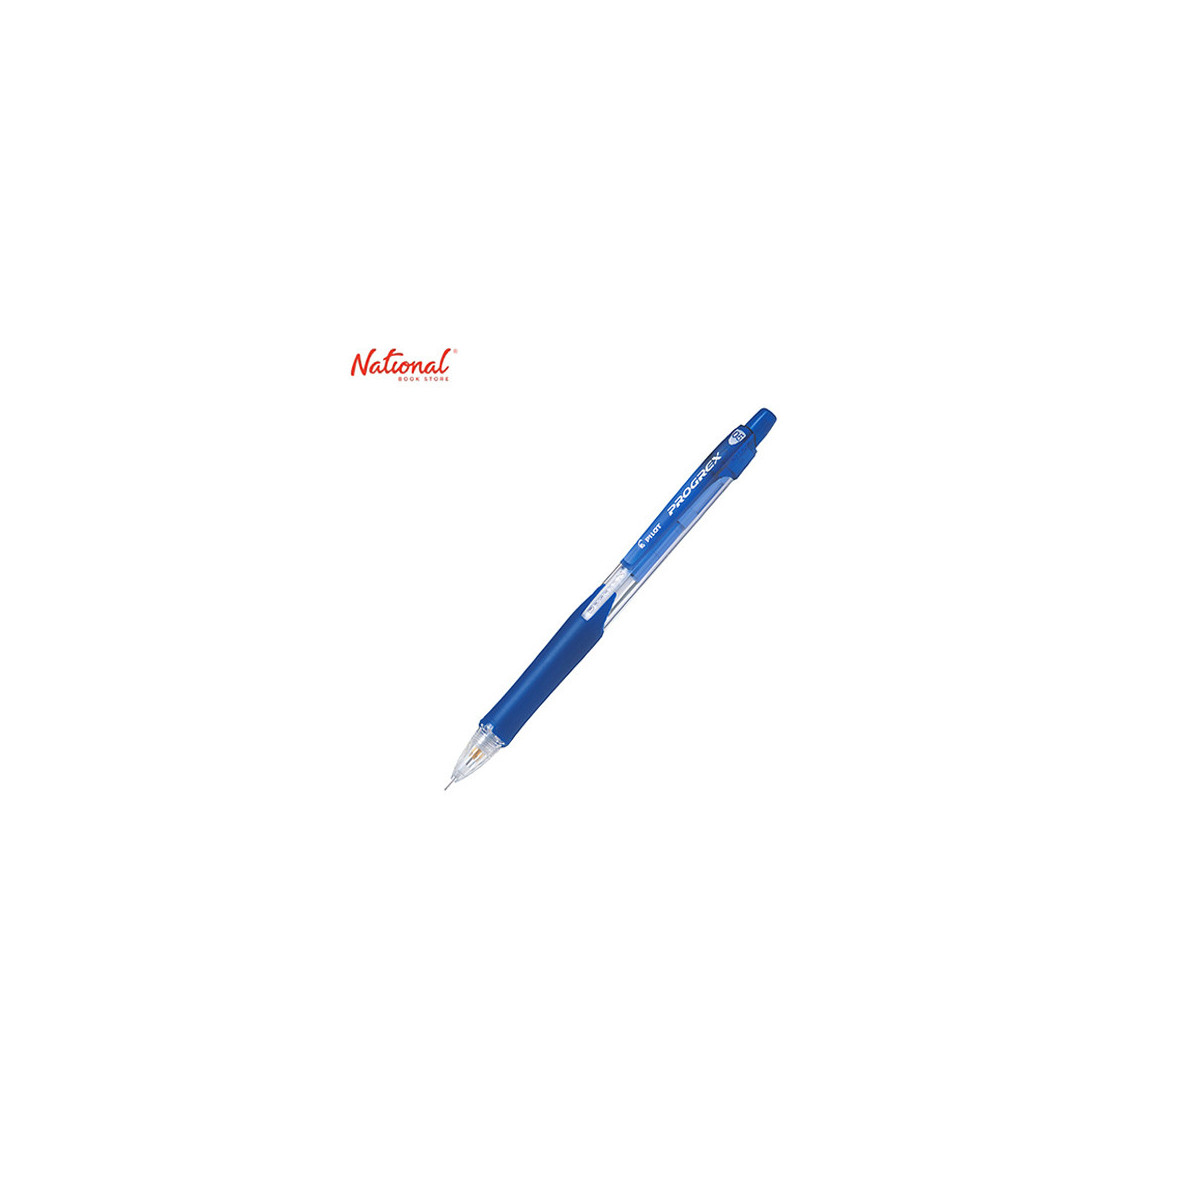 Pilot Mechanical Pencil Progrex With Rubber Grip 0.5mm, Blue H125C-SL-L